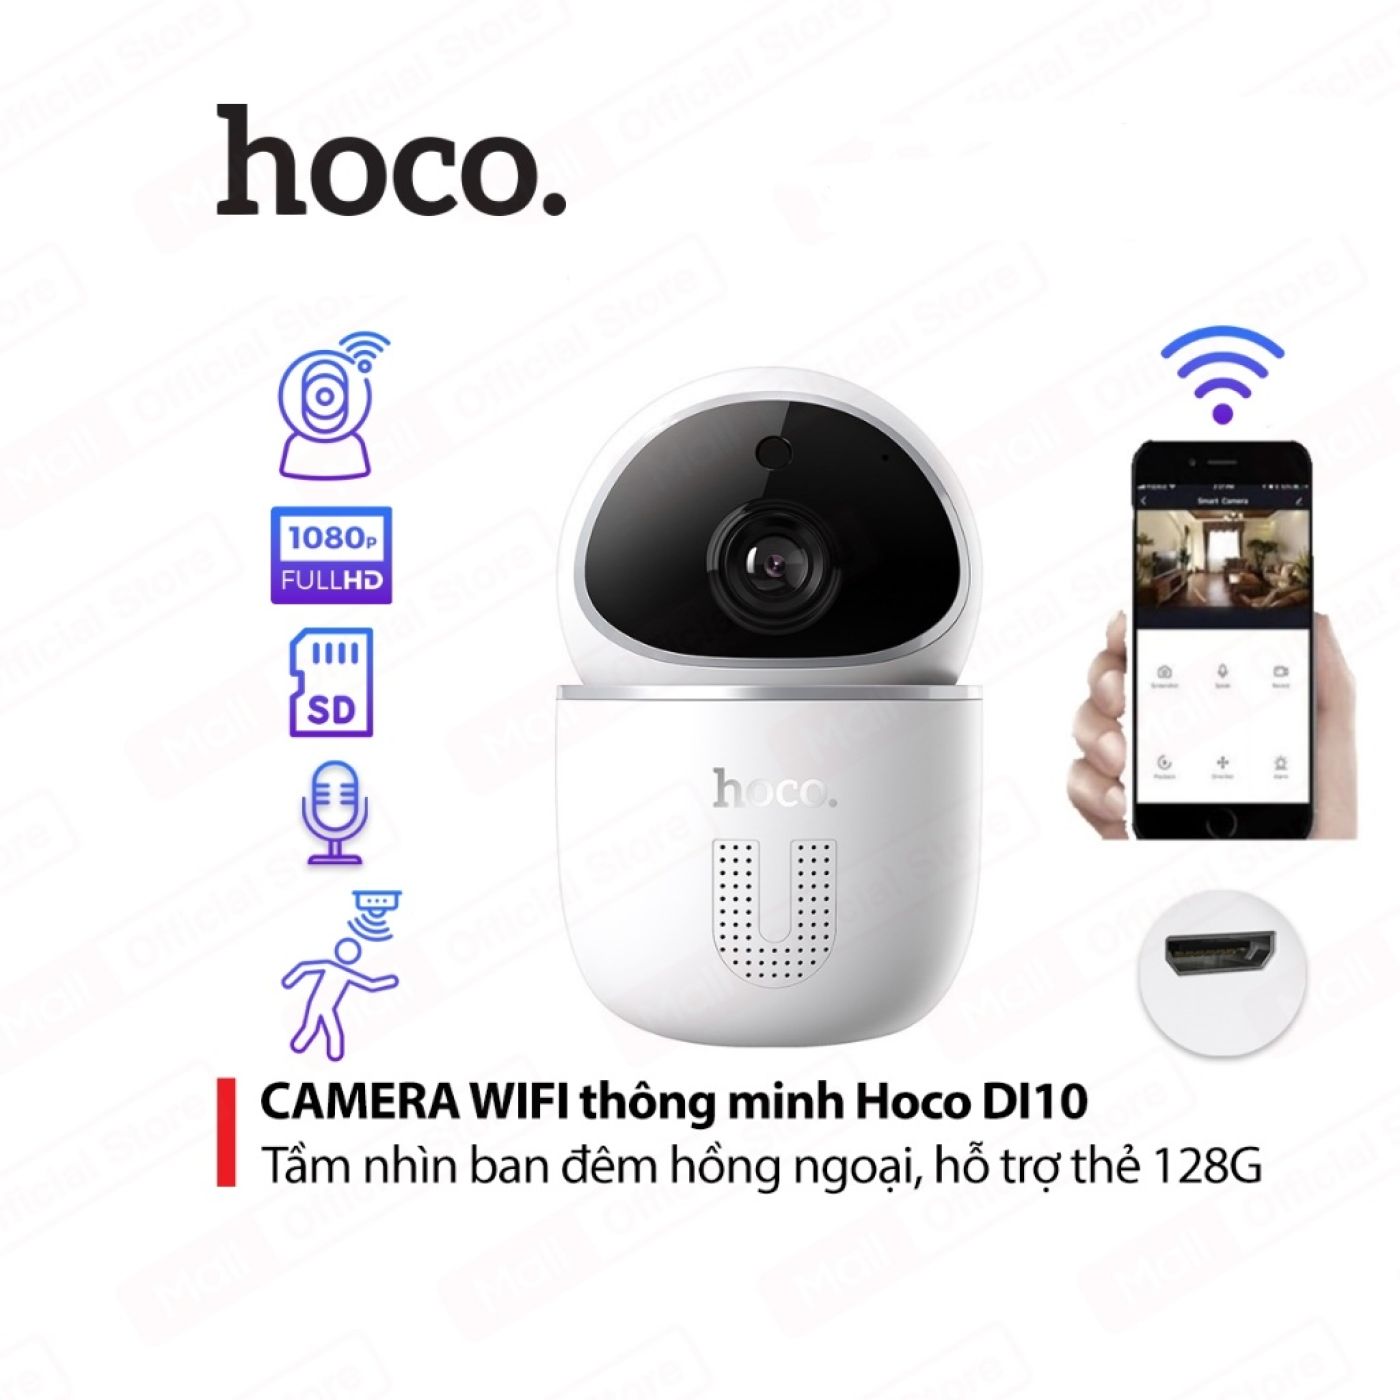 Camera Wifi thông minh nói chuyện 2 chiều, phát hiện chuyển động của Hoco Di10